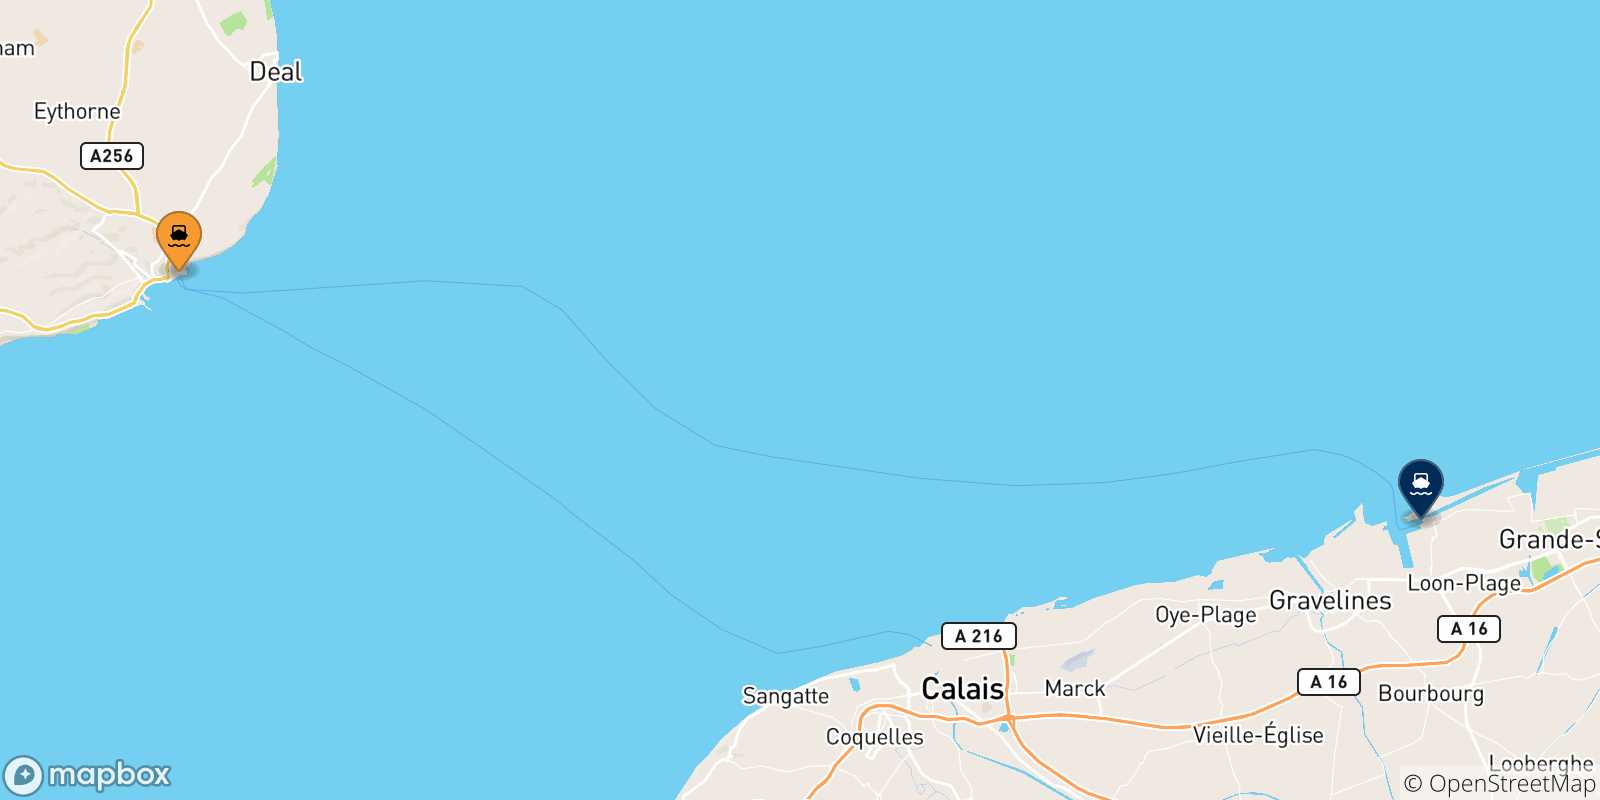 Mappa delle possibili rotte tra l'Inghilterra e Dunkerque